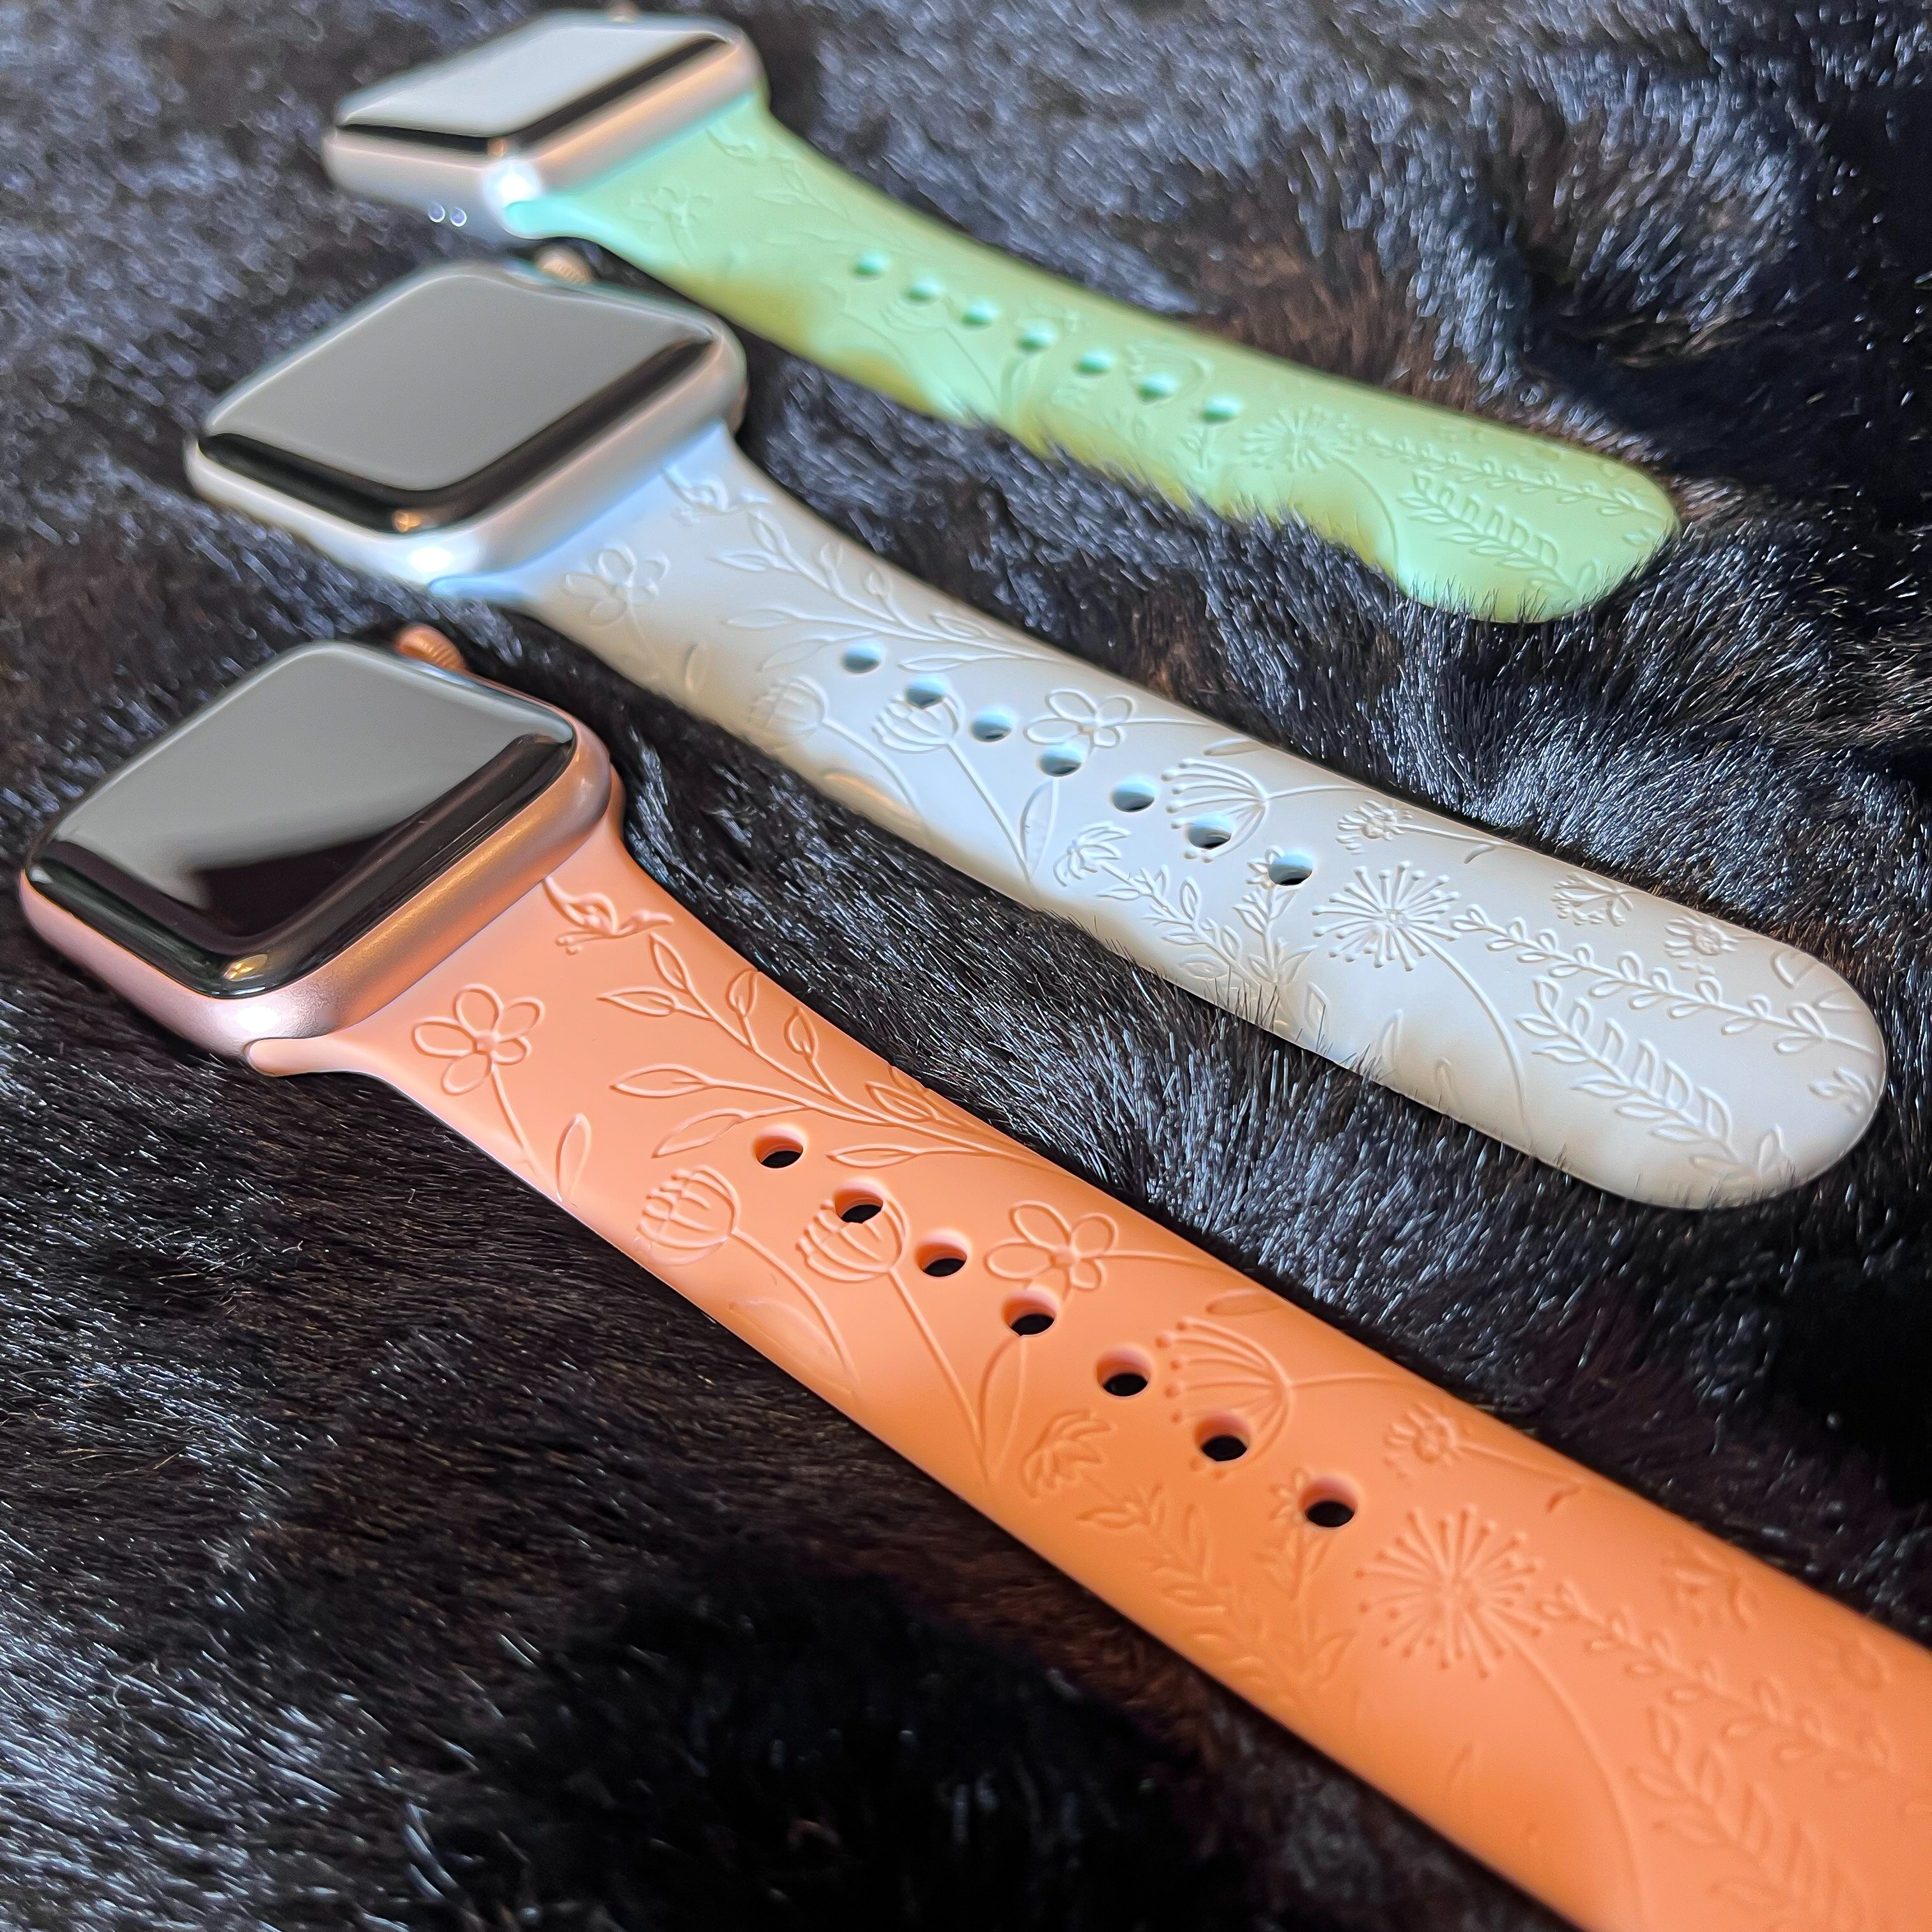 Apple Watch druck Sportarmband - Blumen orange